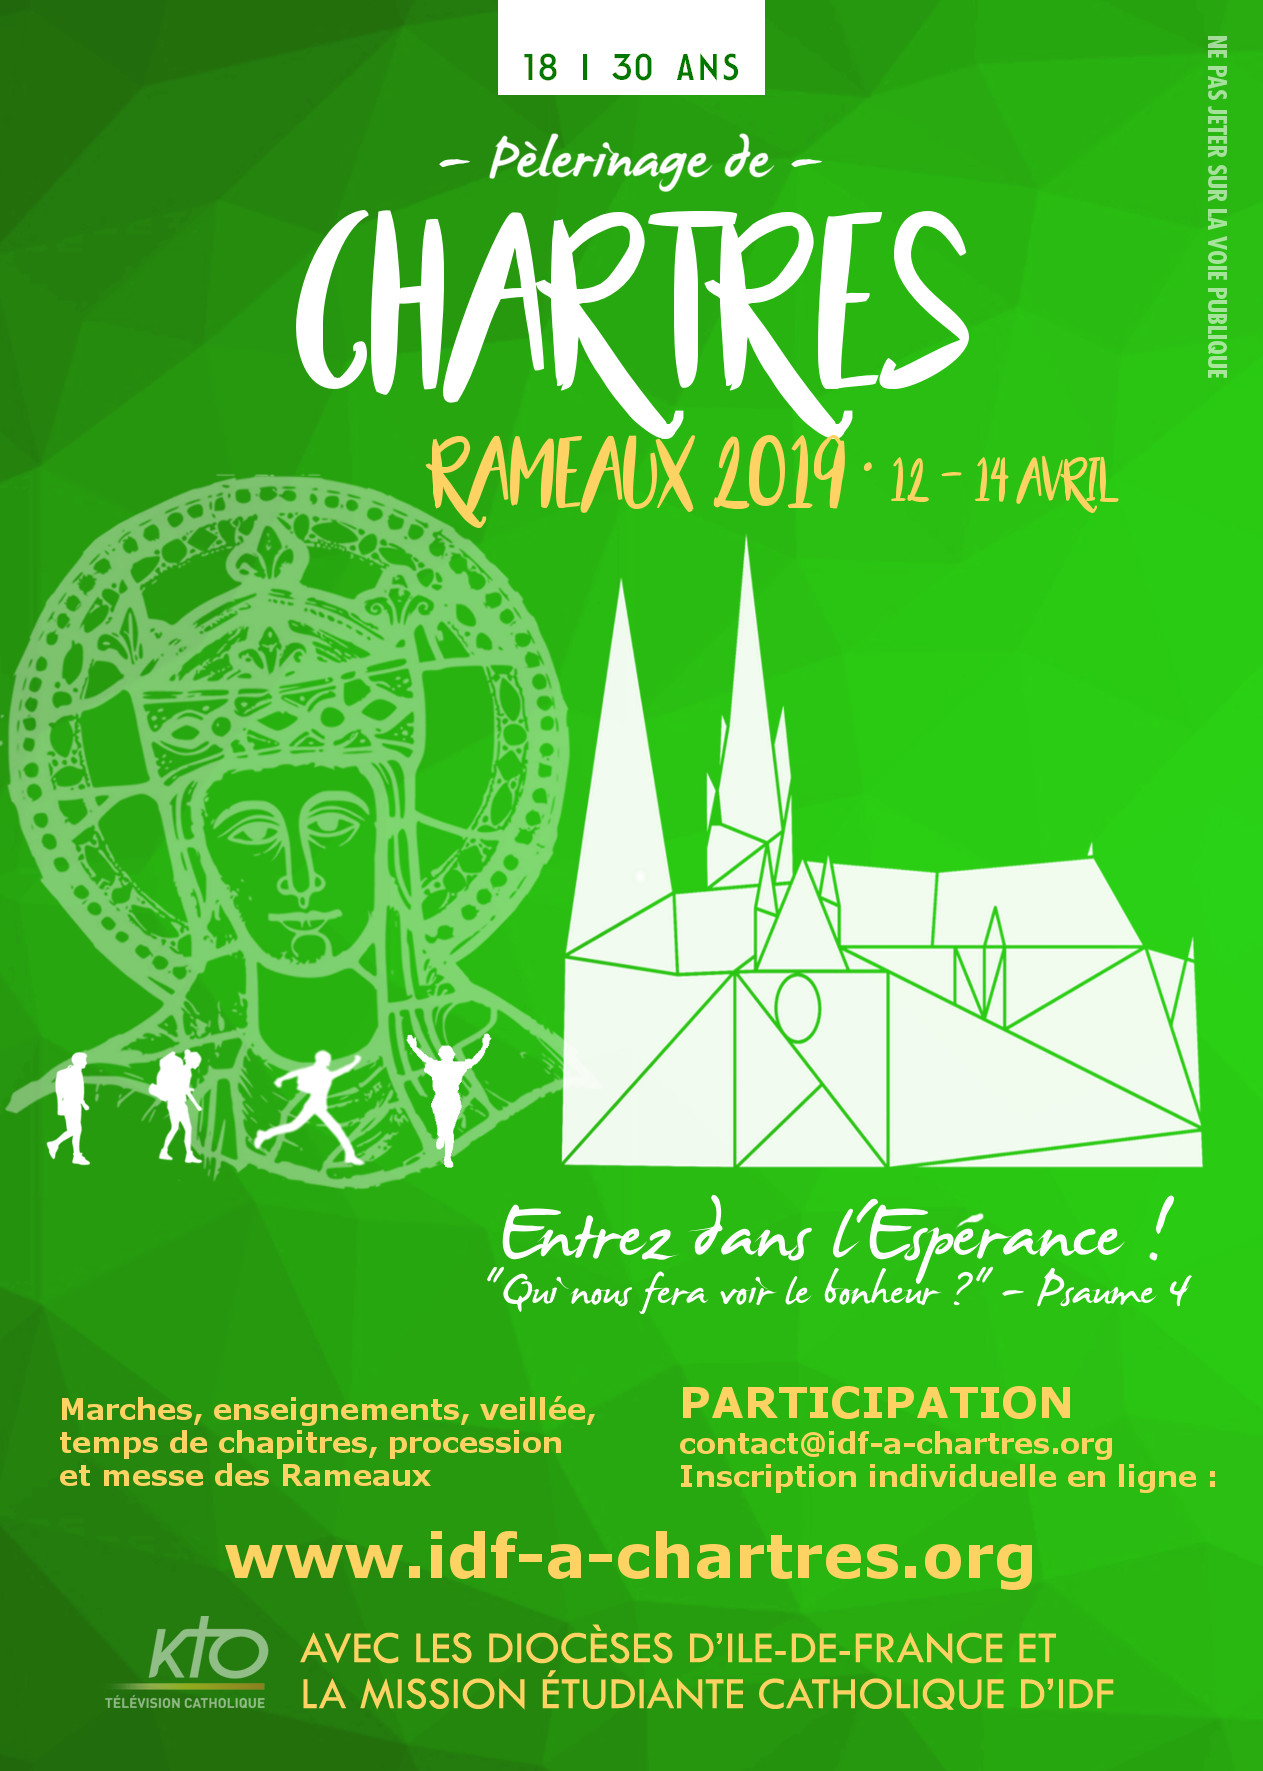 Pèlerinage de Chartres (28) des jeunes d’Île-de-France 2019 – du 12 au 14 avril